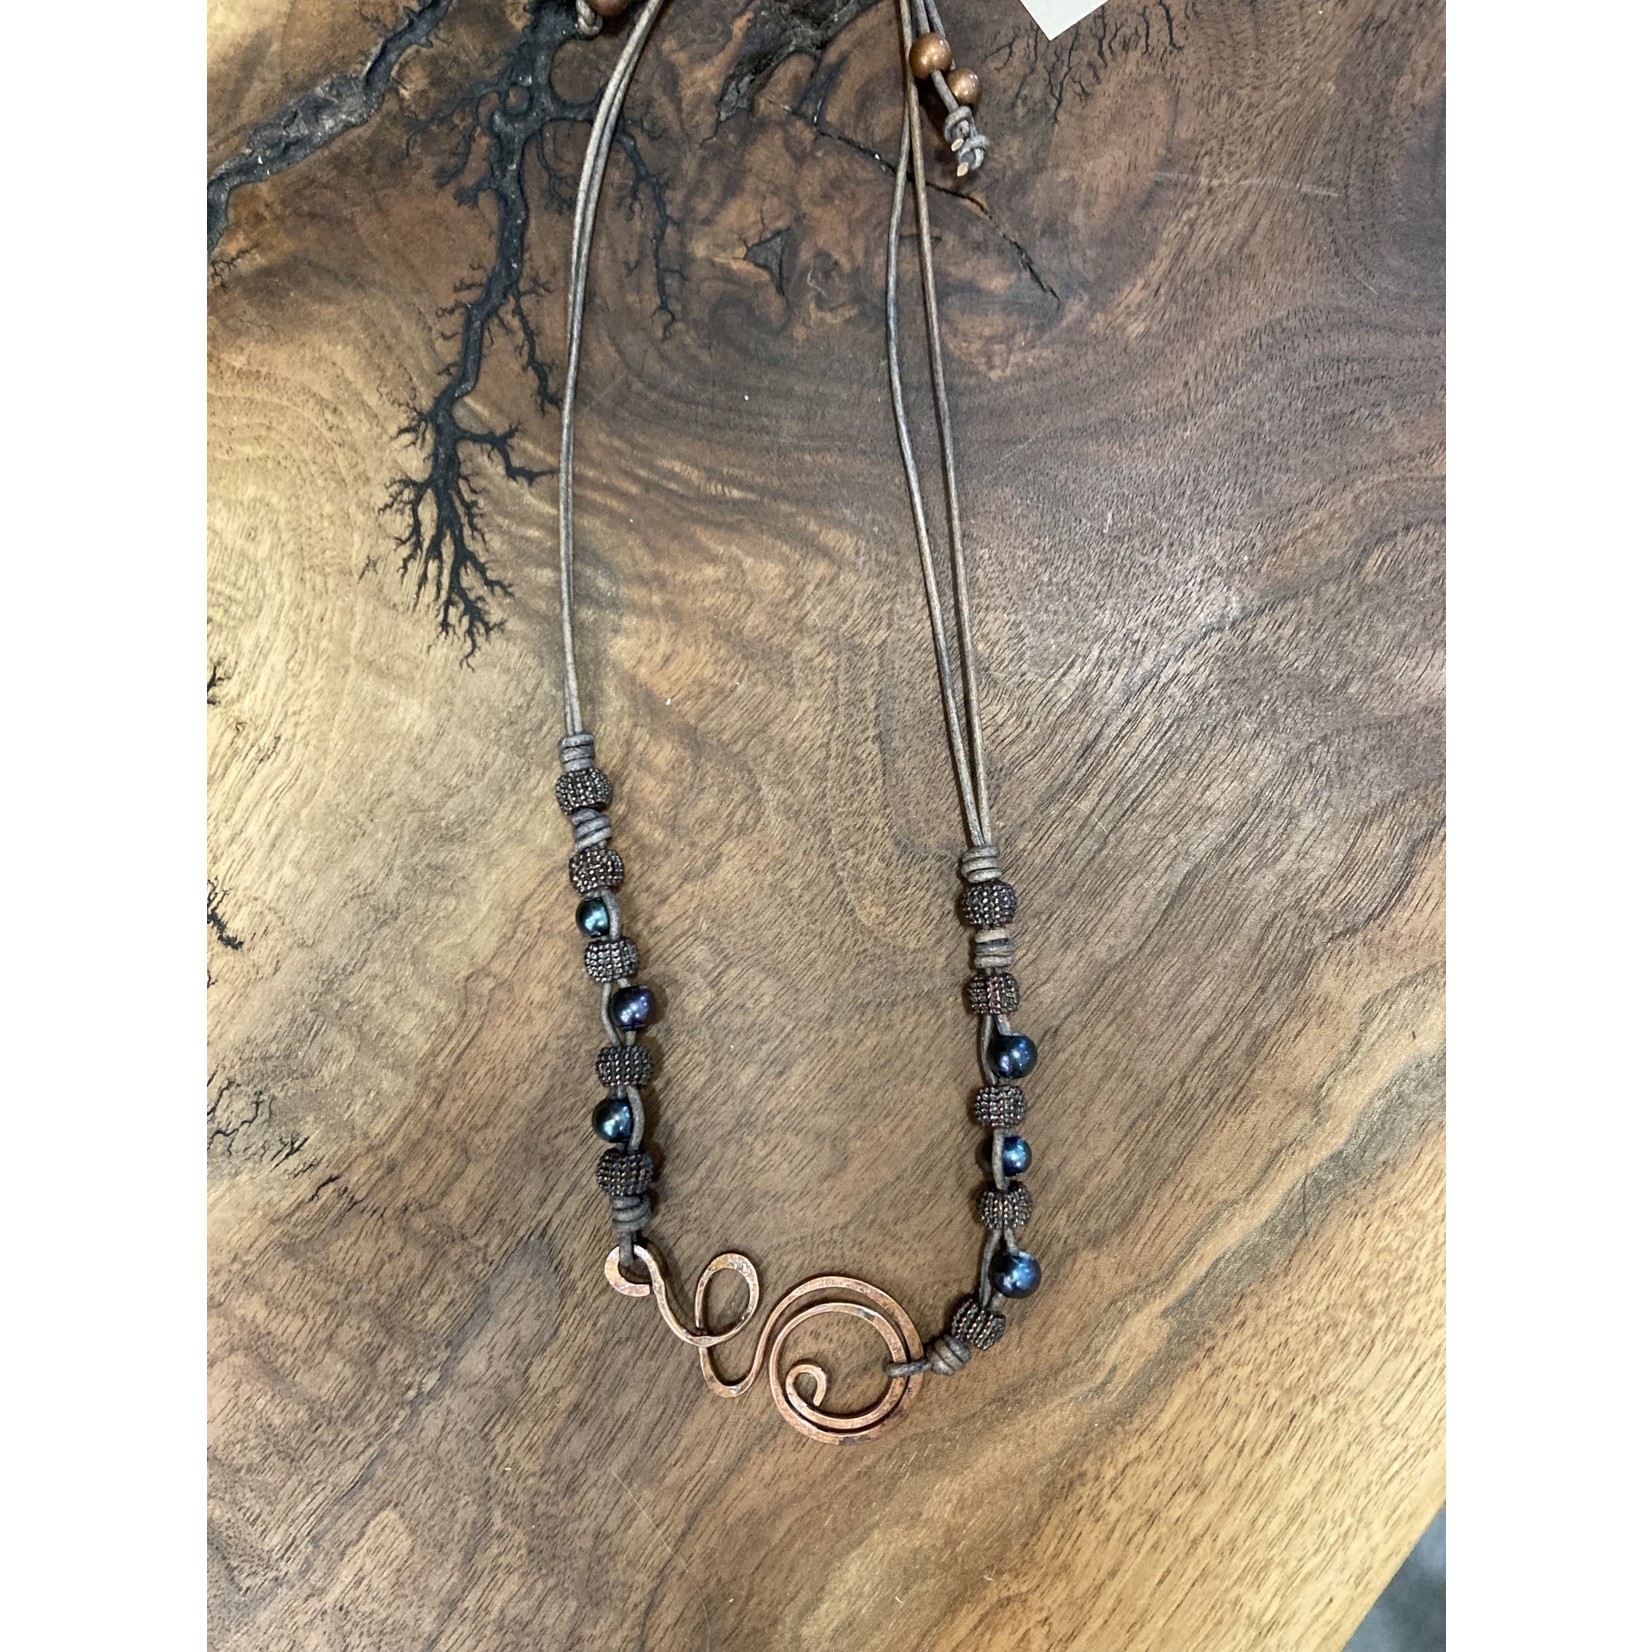 Julia Jones JMJ Designs 1022-20 Copper swirl Necklace on leather w. Pearls